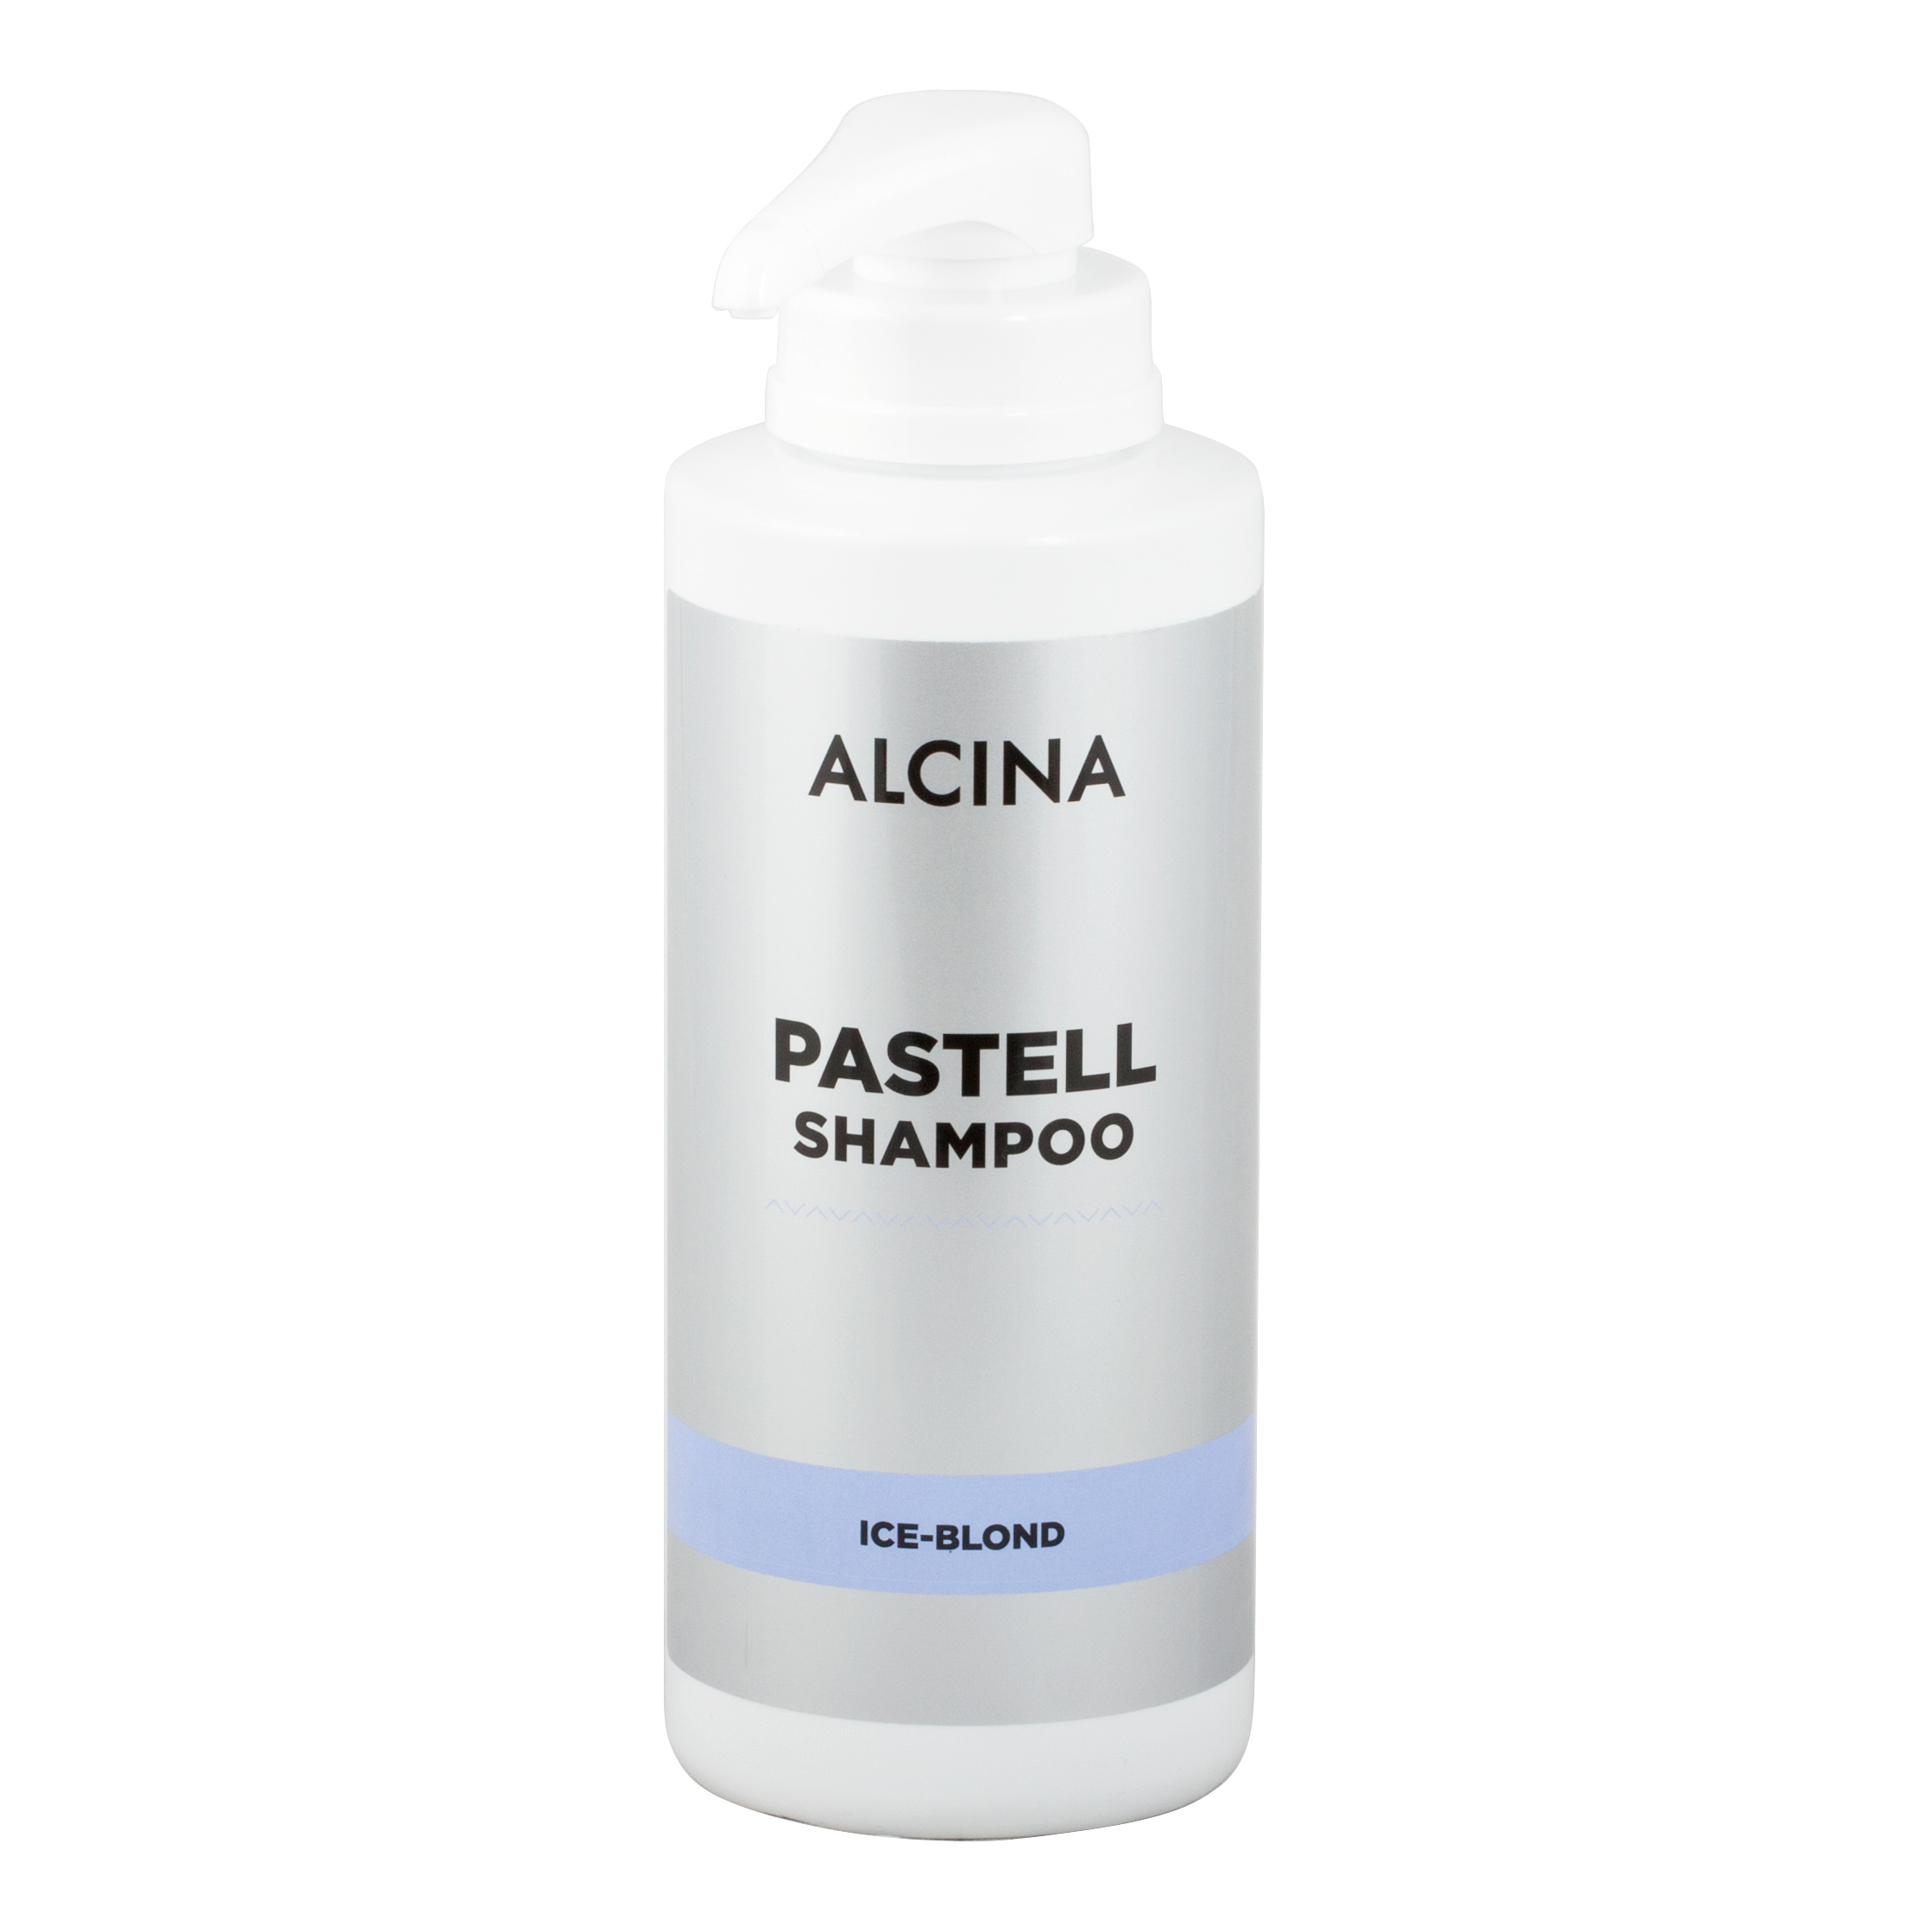 Alcina - Pastell šampón Ice-Blond kabinetné balenie